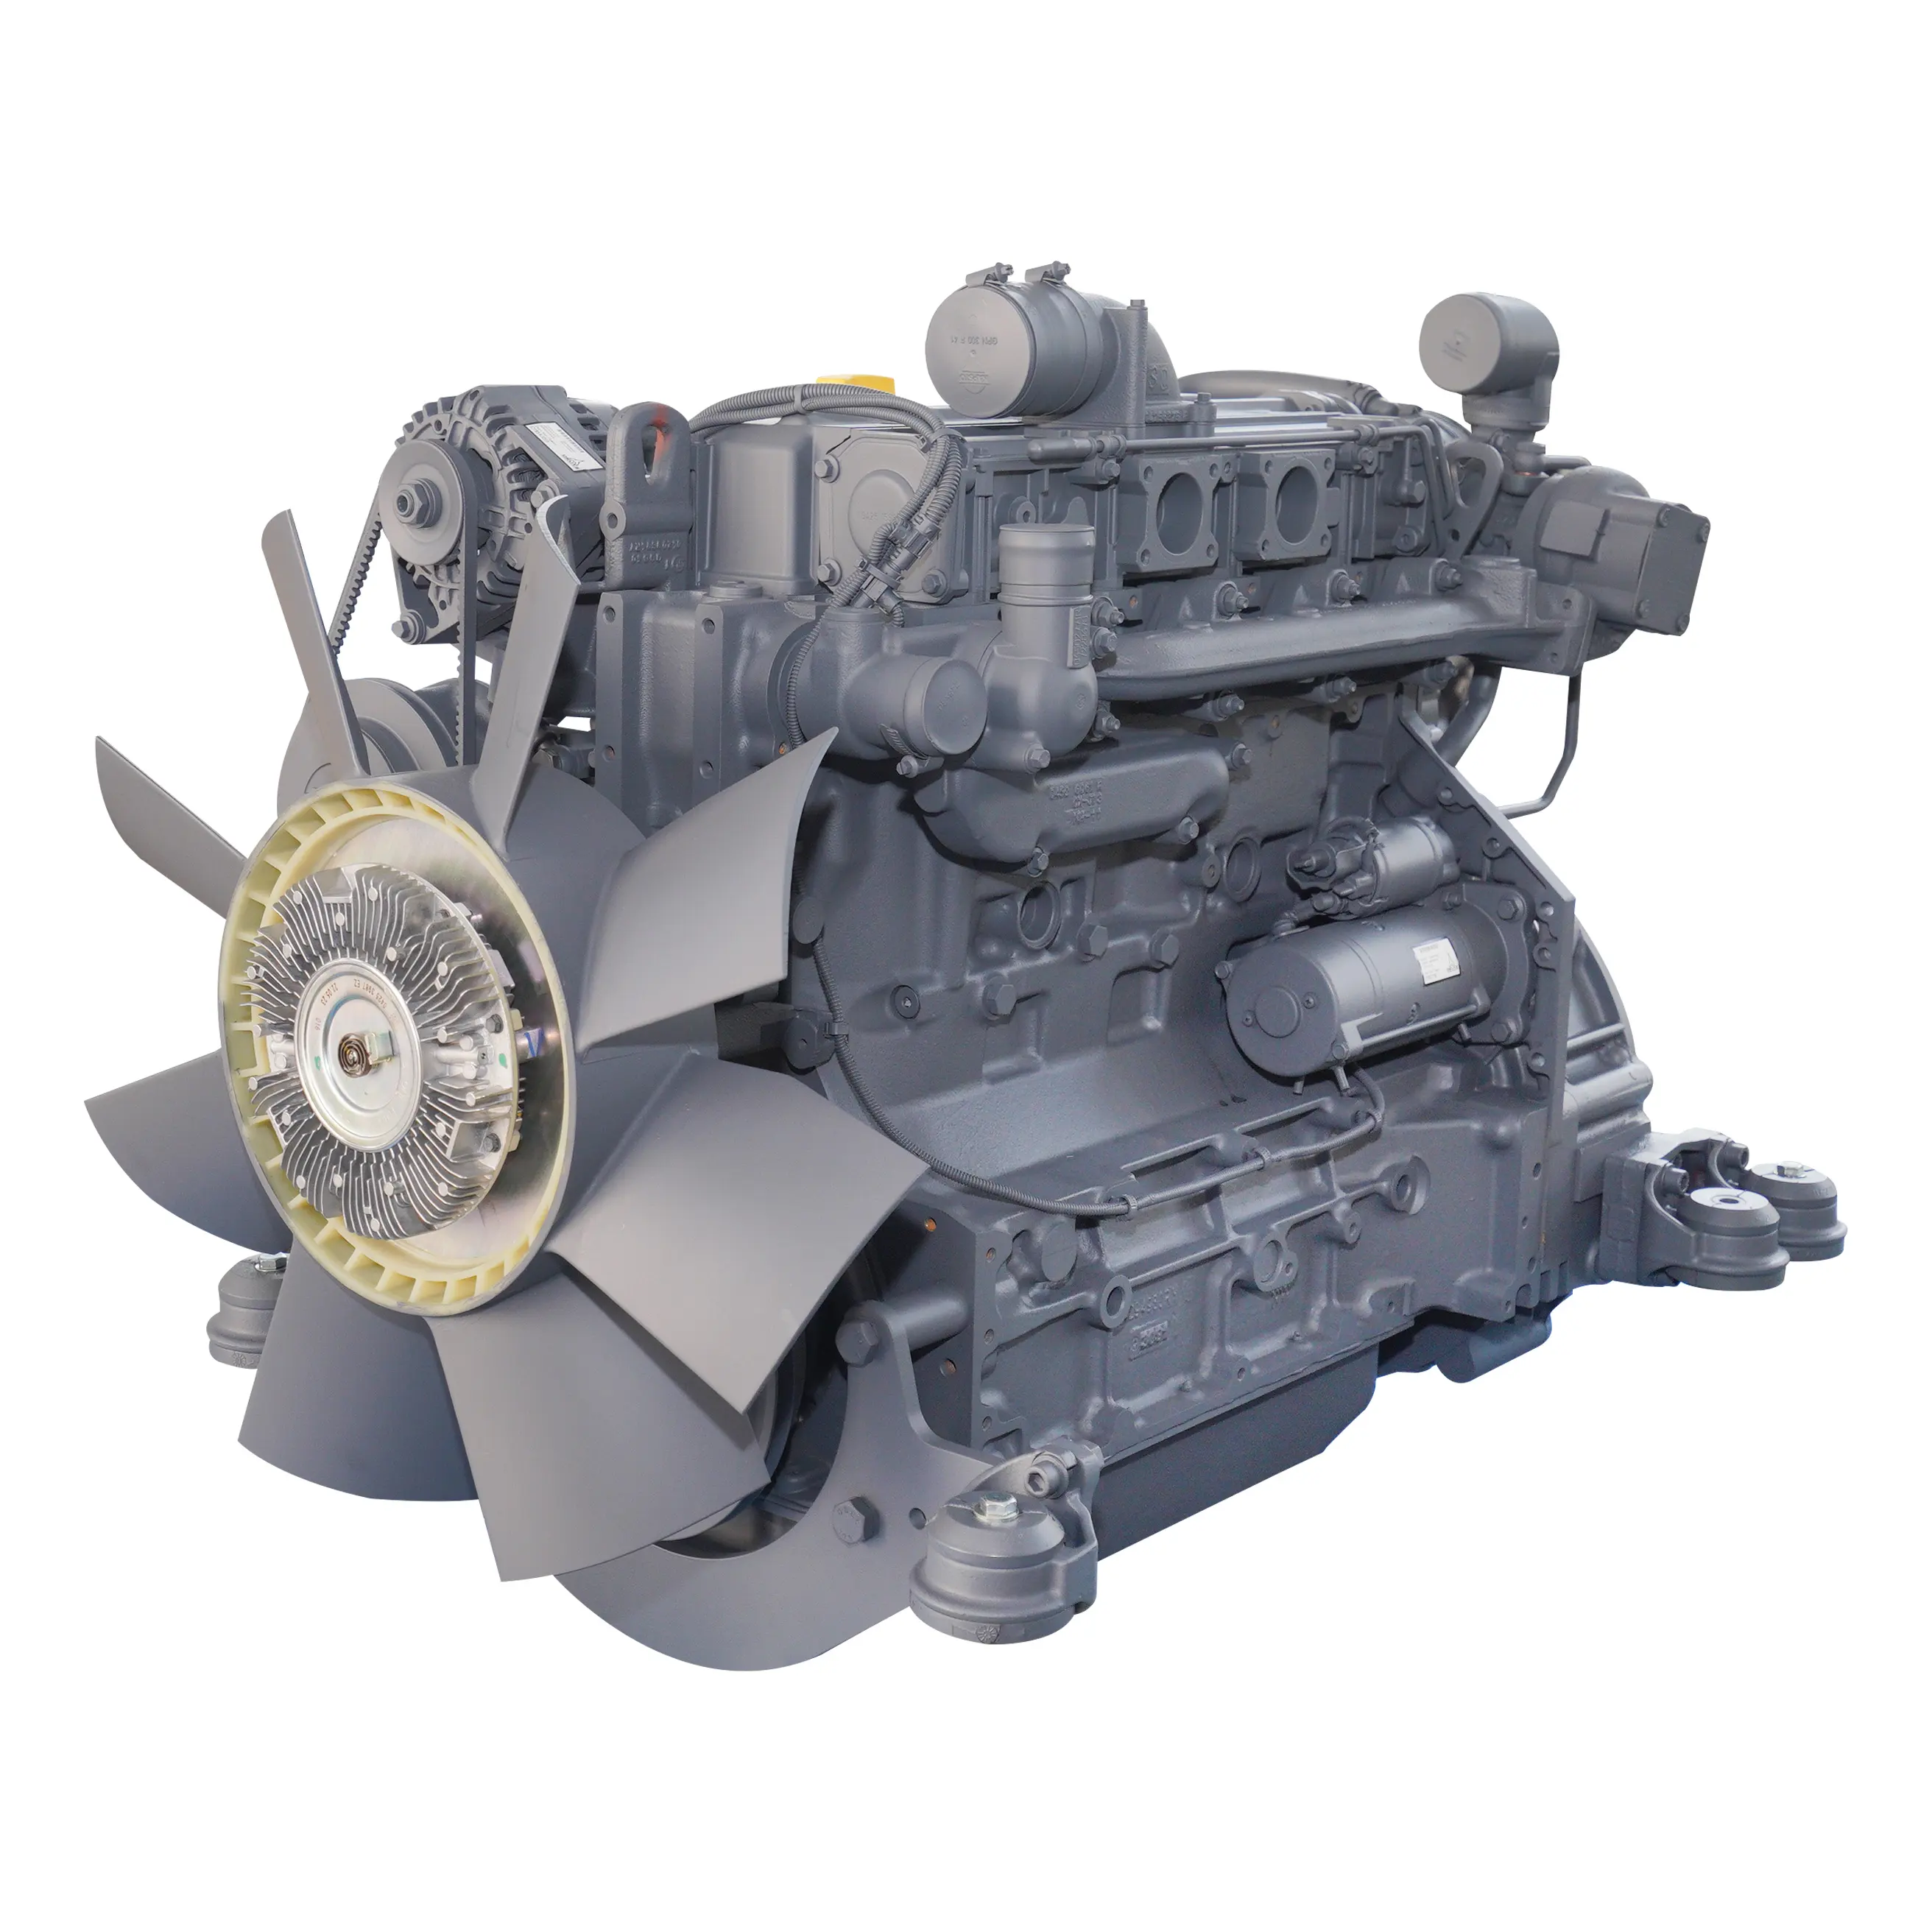 Hakiki stil 4 silindir BF4M1013EC Deutz motorlar İnşaat makineleri için dizel motor